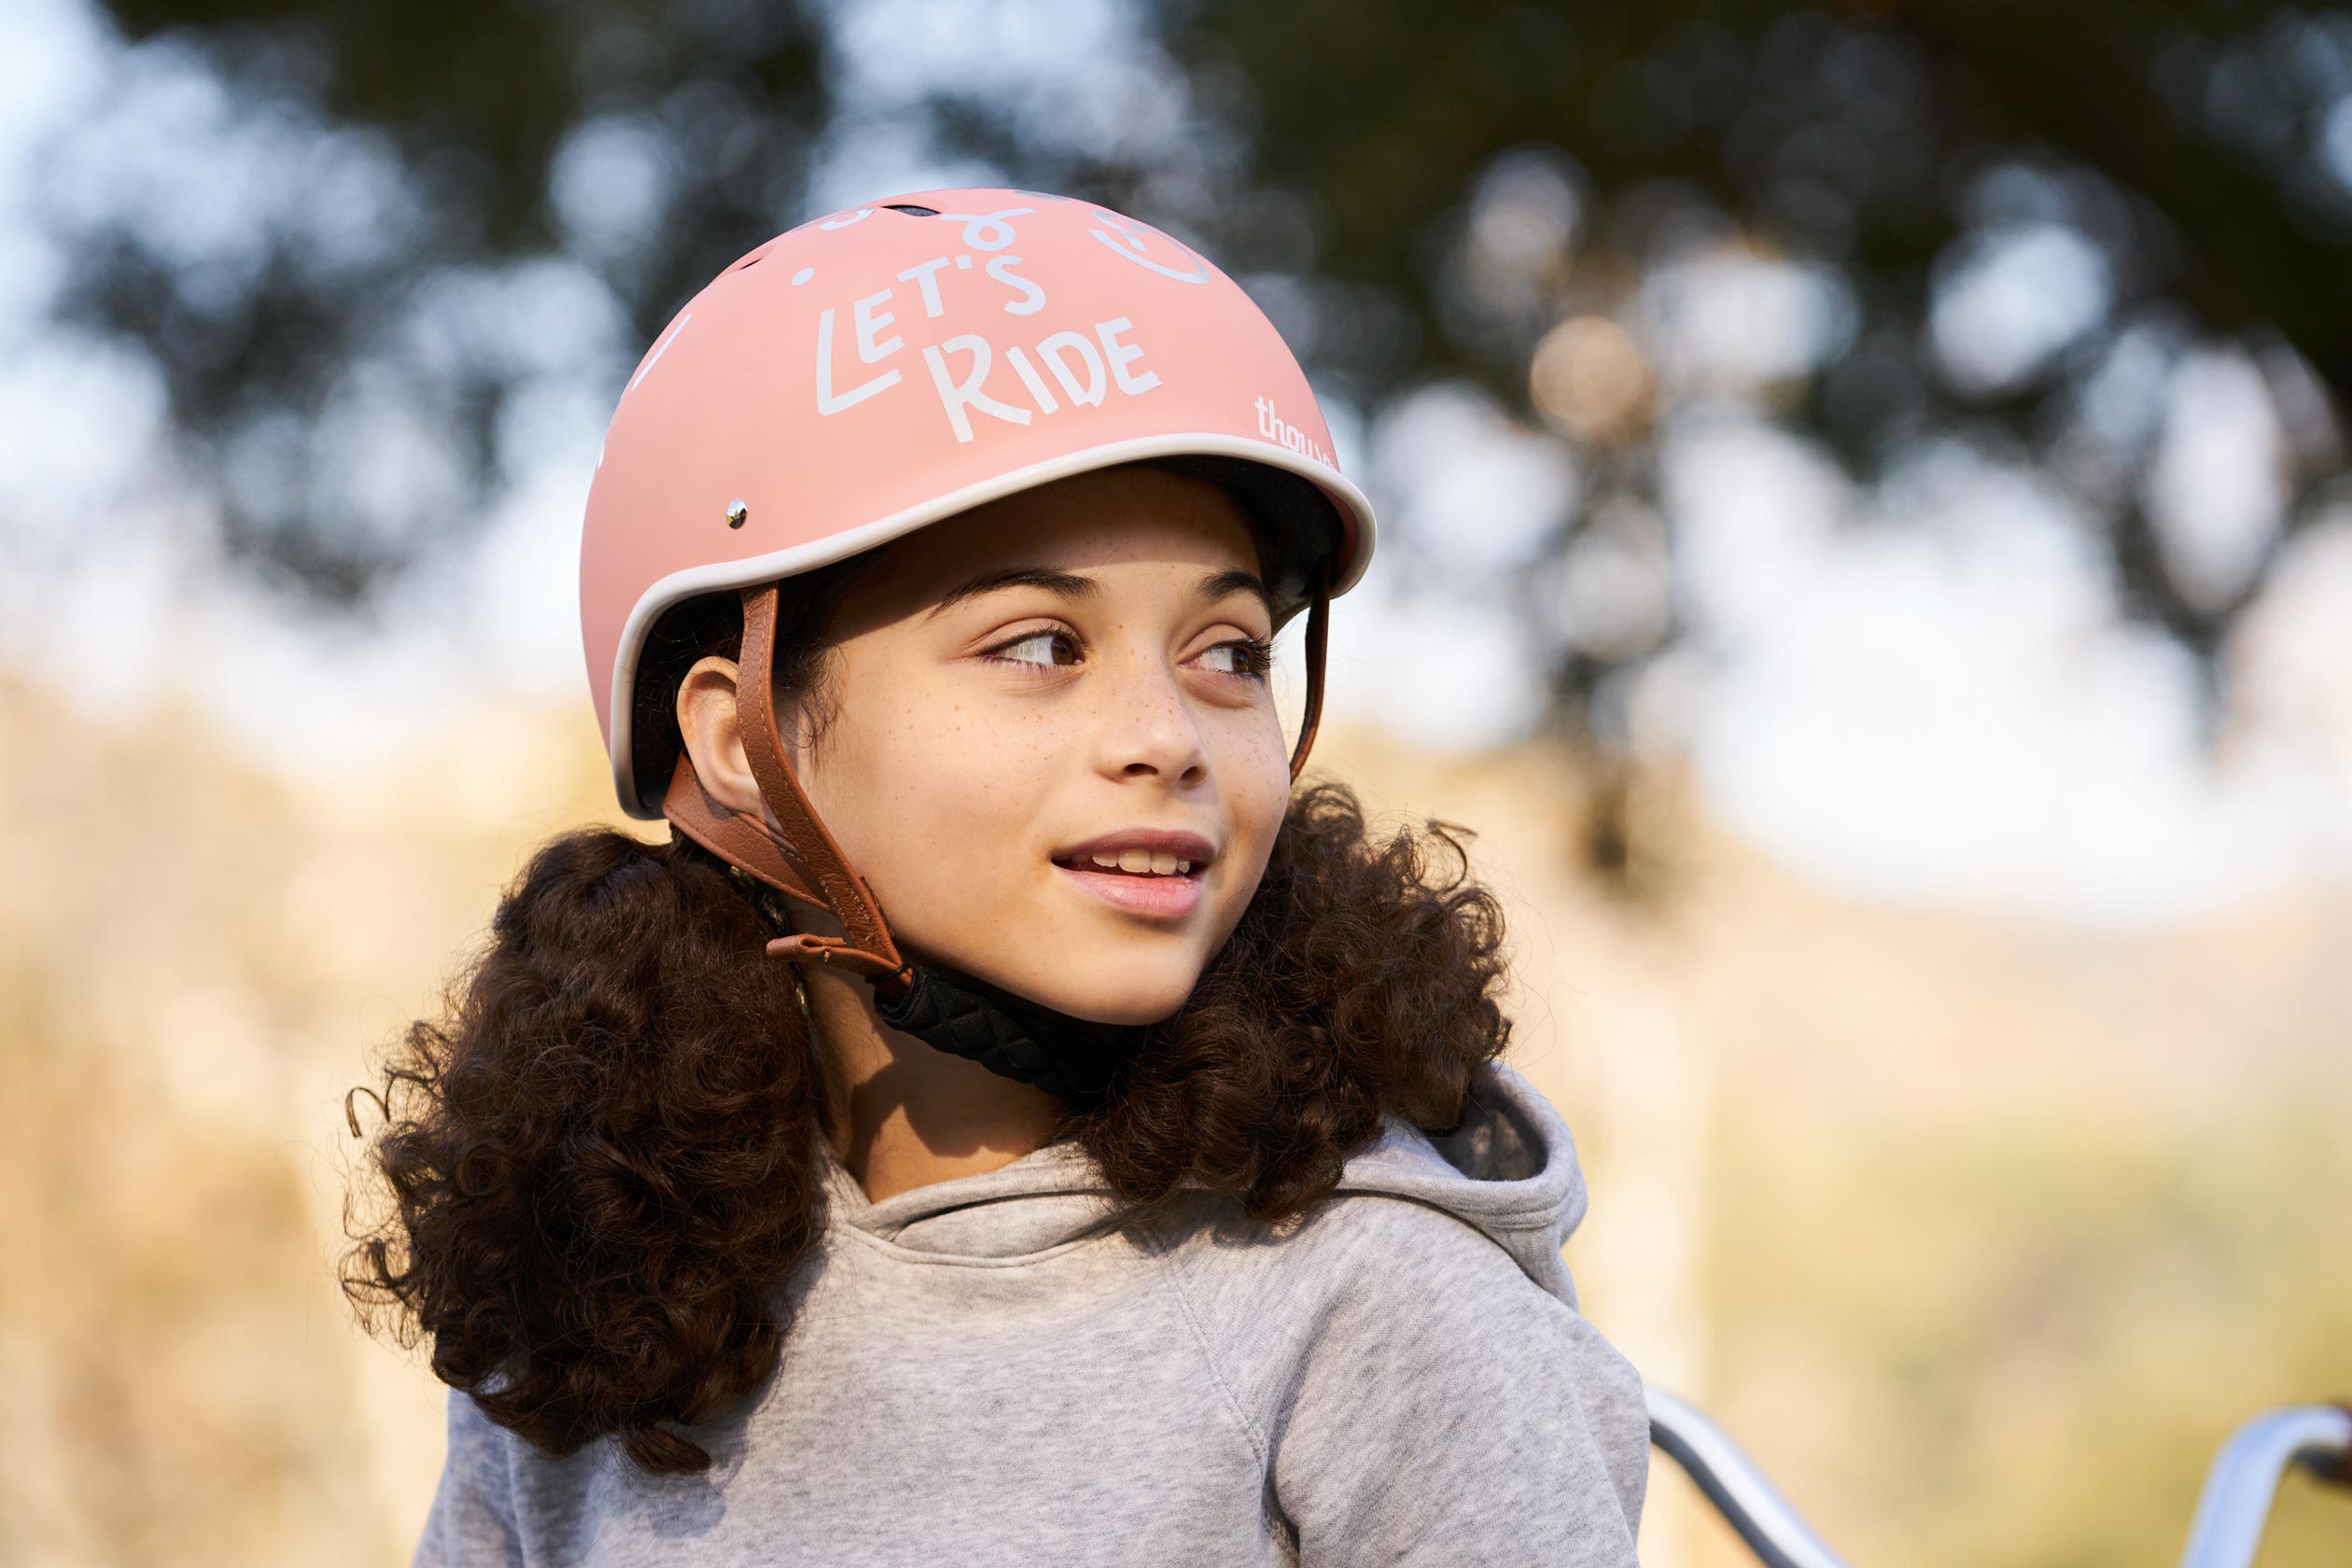 Thousand Jr Kids Helmet, Power Pink